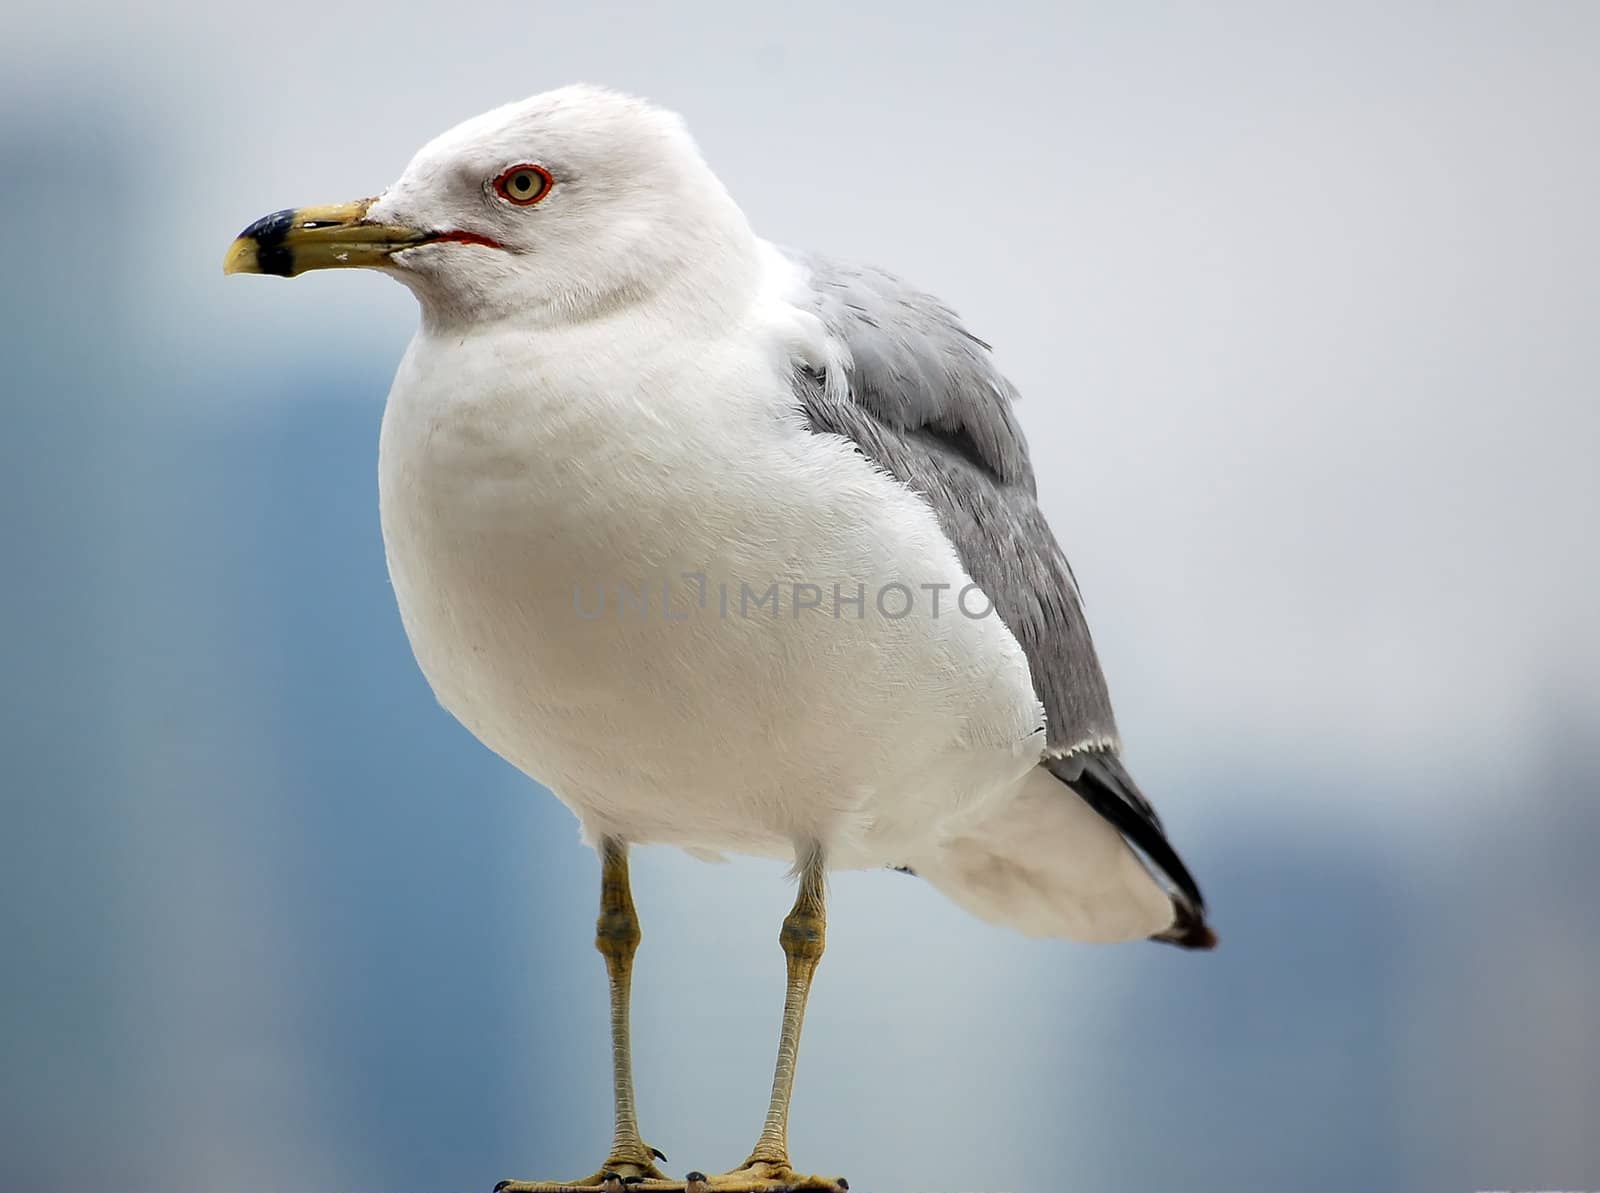 Walking Seagull by nialat